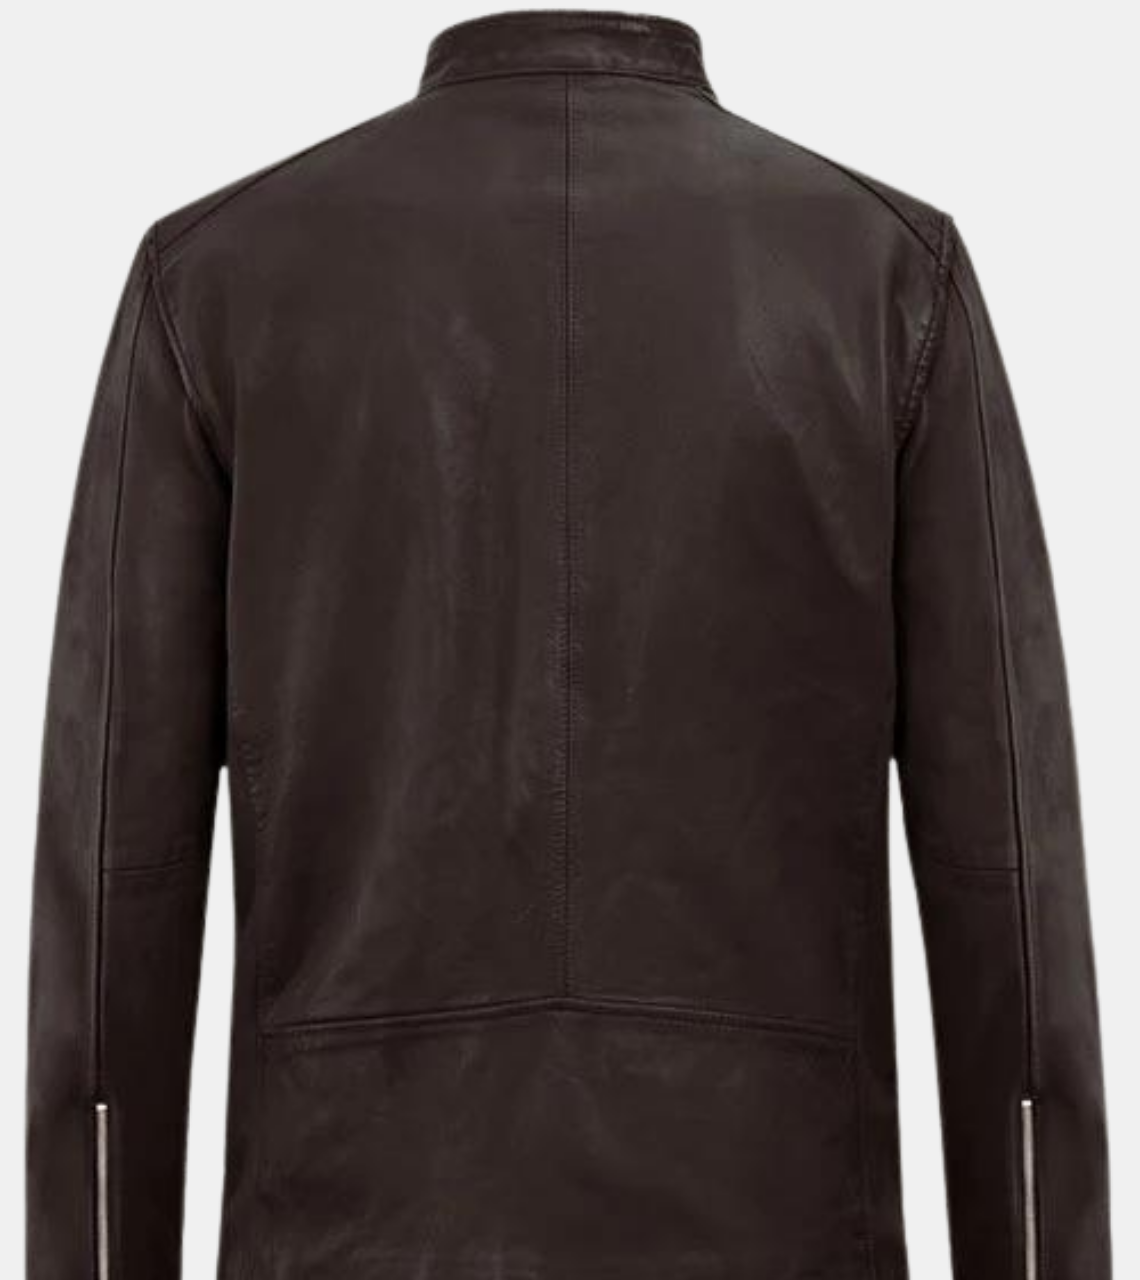  Gespare Men's Brown Biker's Leather Jacket Back